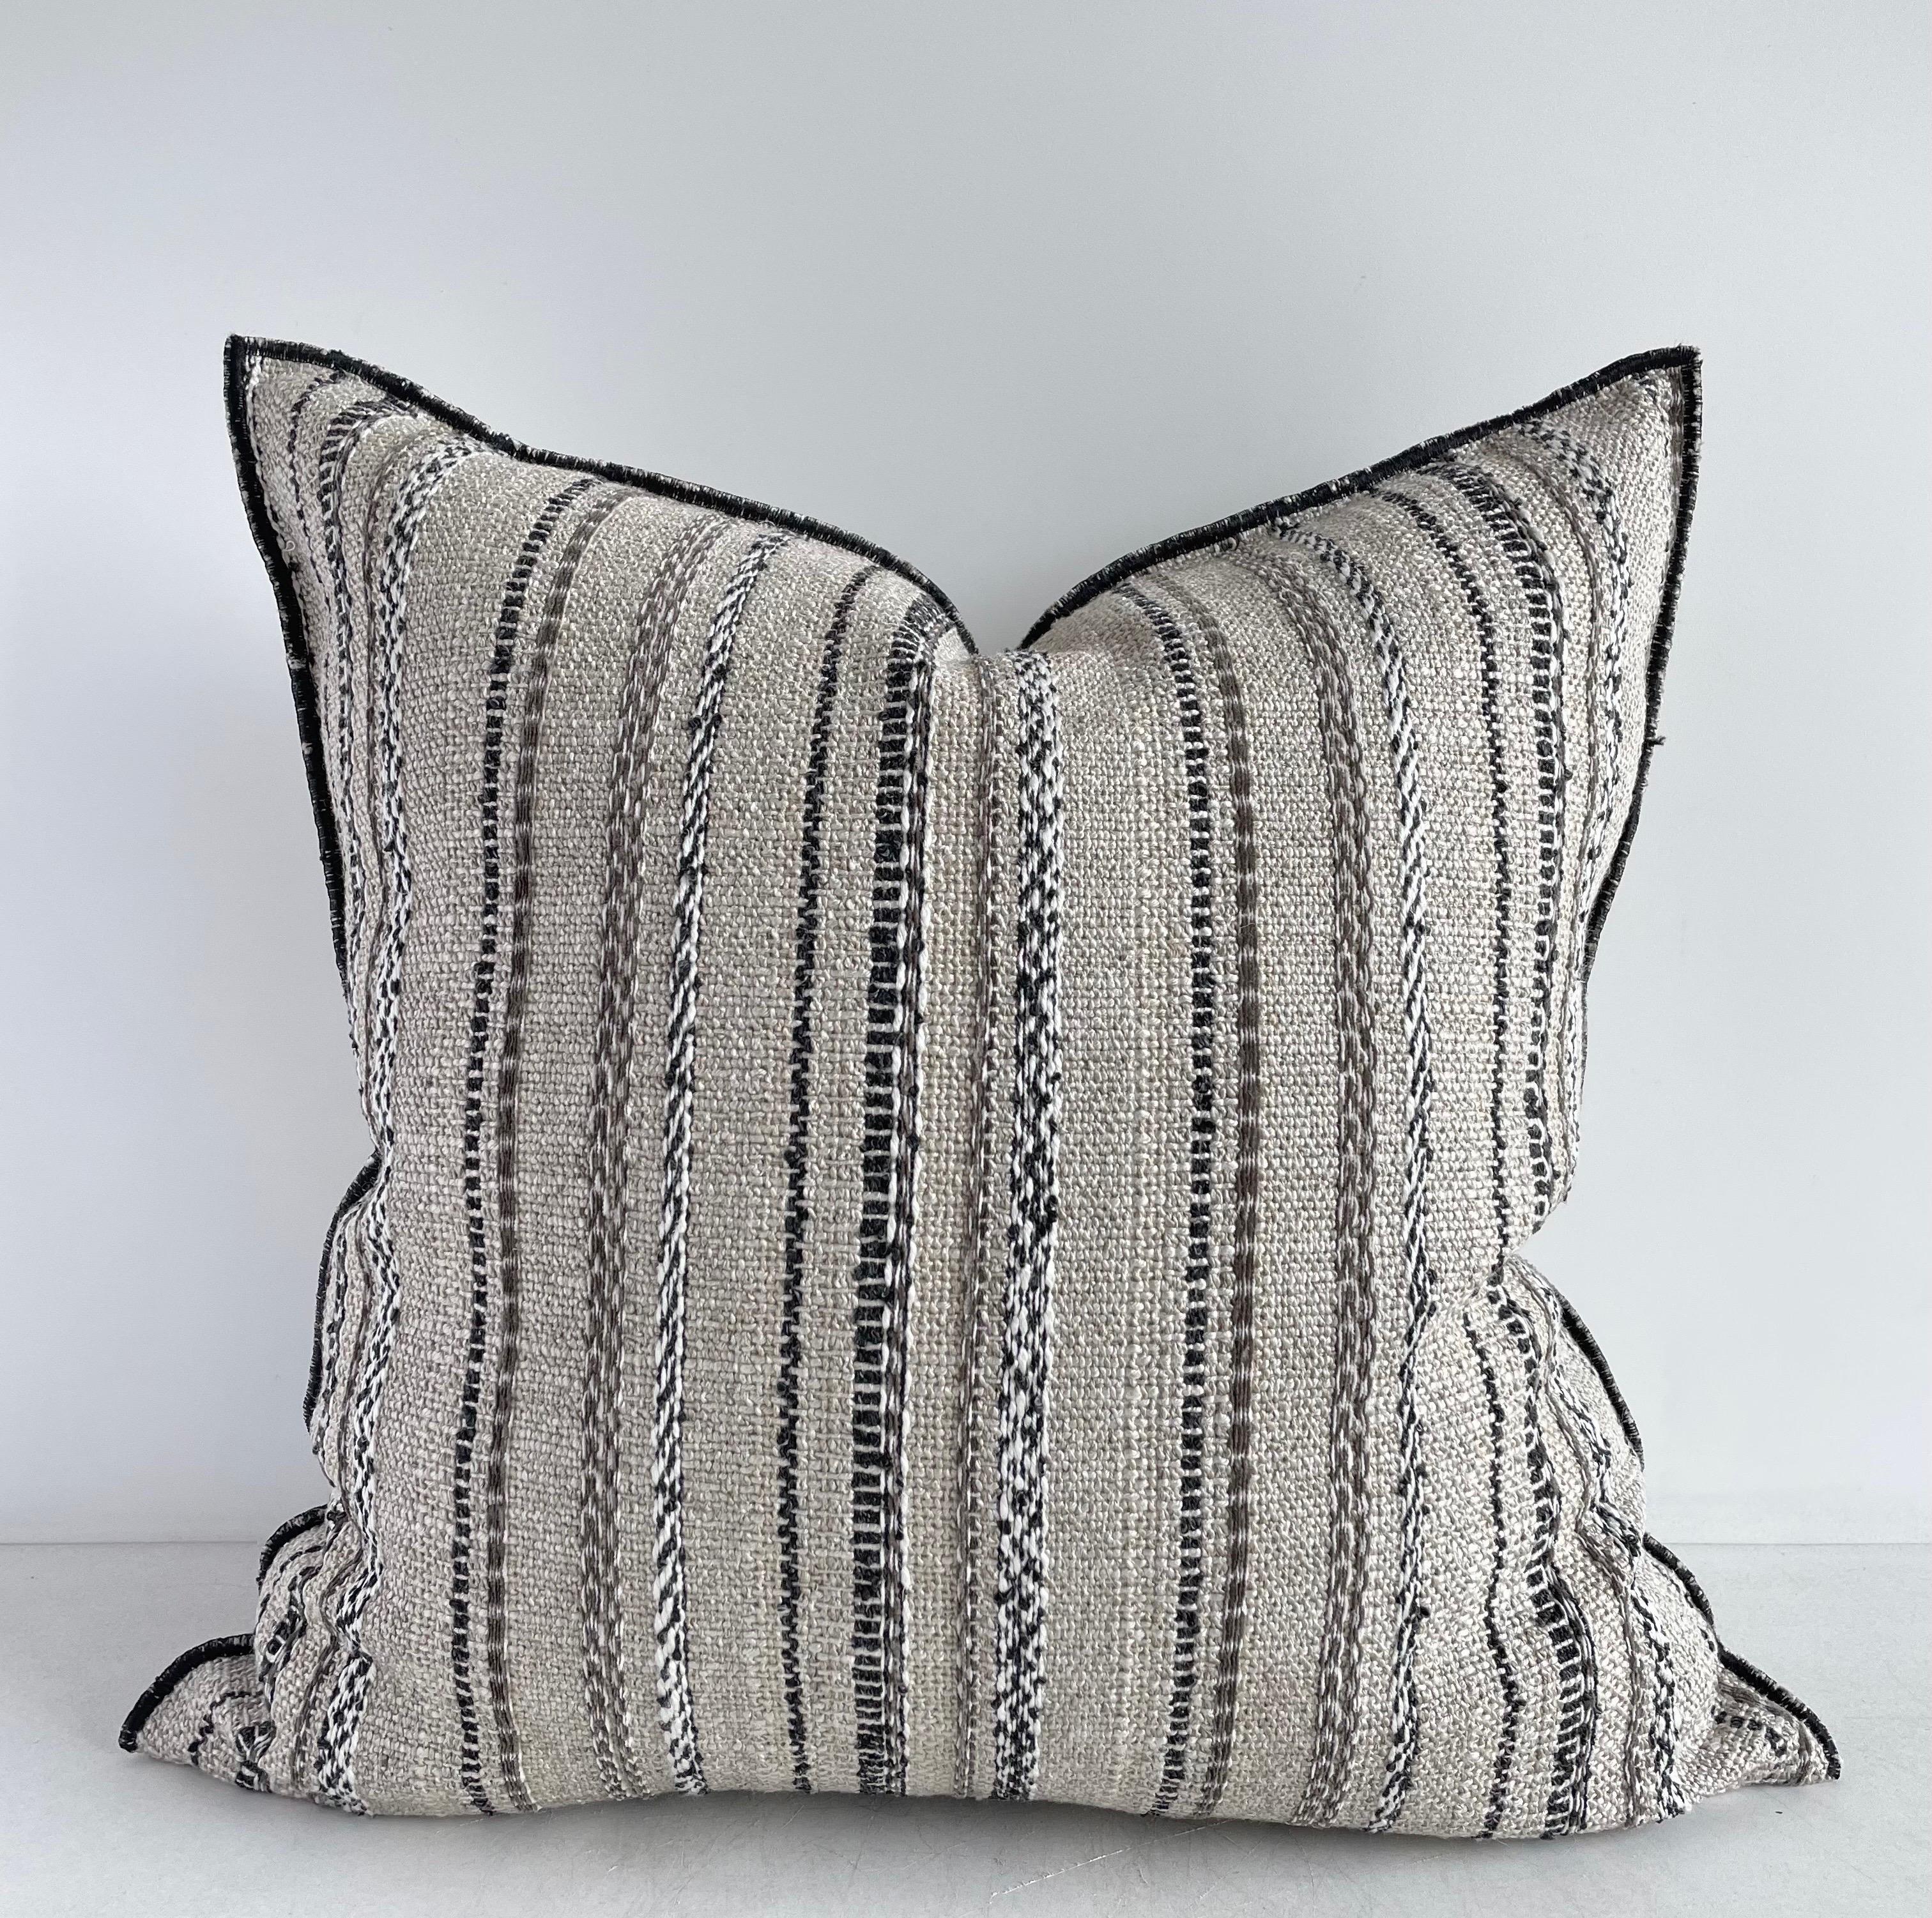 Maison de Vacances Linen Embroidered Pillow
Size 20